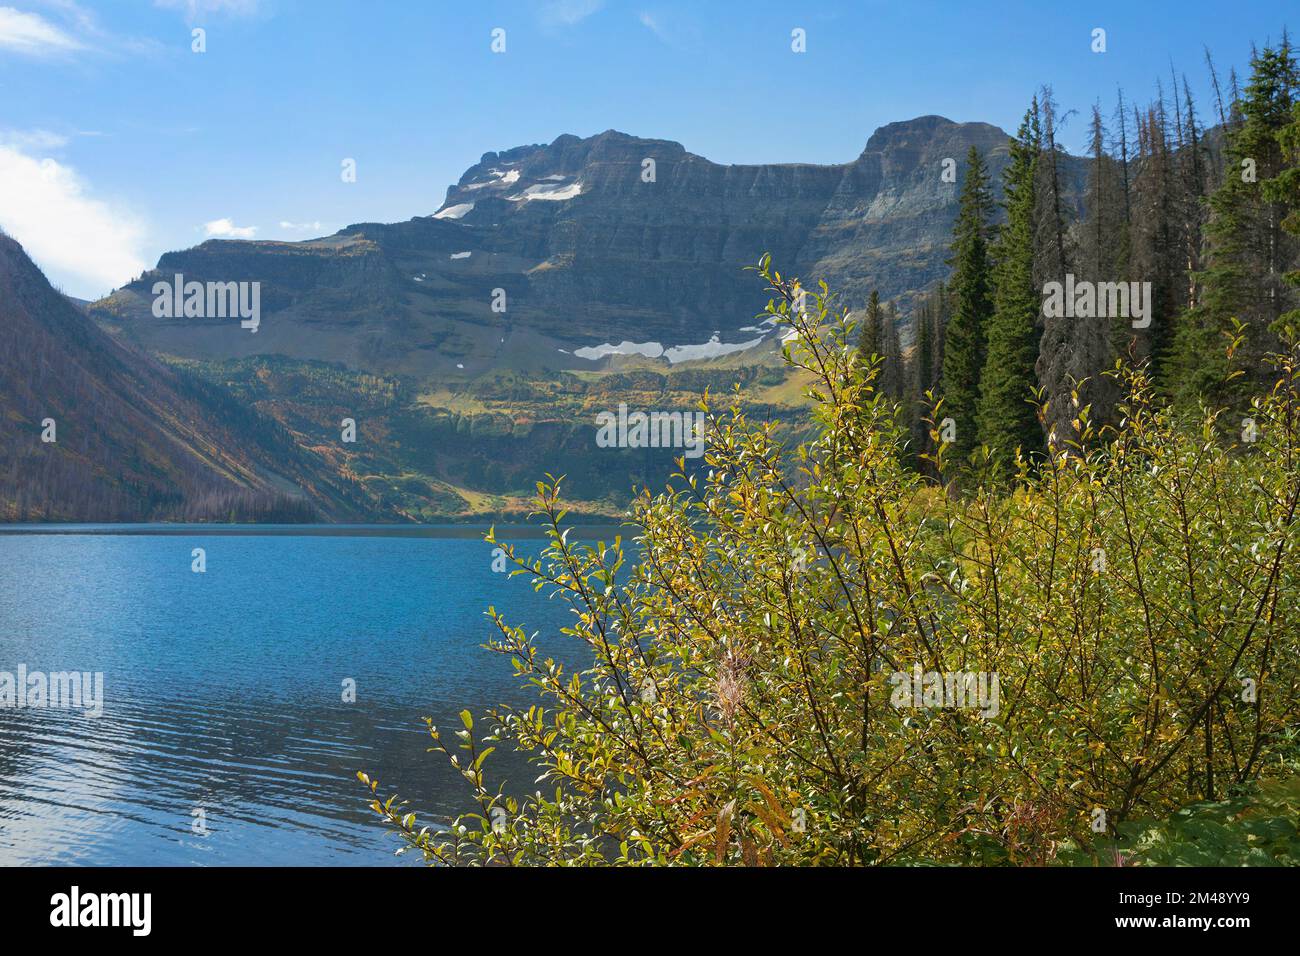 Cameron Lake, in un circo glaciale, e Monte Custer. Il lago attraversa il confine tra Stati Uniti e Canada nel Waterton Glacier International Peace Park Foto Stock